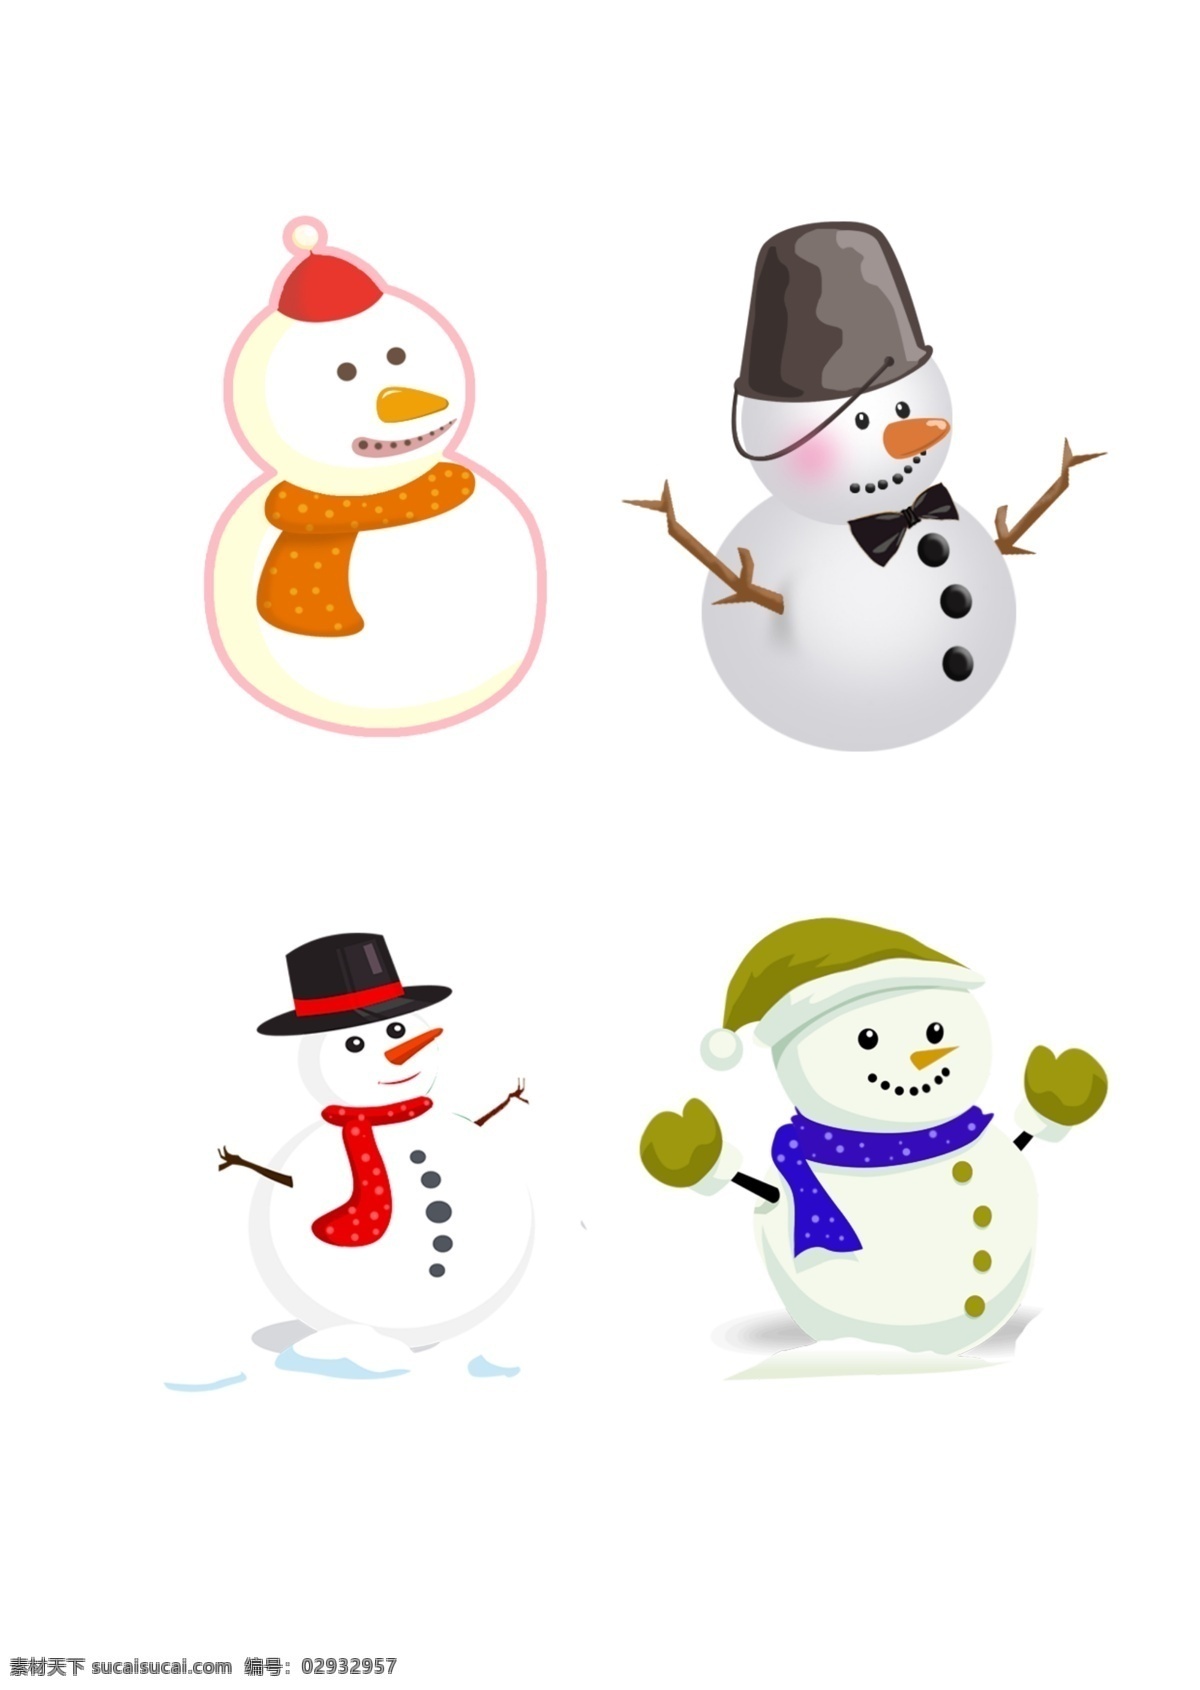 原创 彩色 卡通 可爱 雪人 大雪 冬至 卡通雪人 雪人素材 可爱雪人 简易雪人 雪人元素 帽子雪人